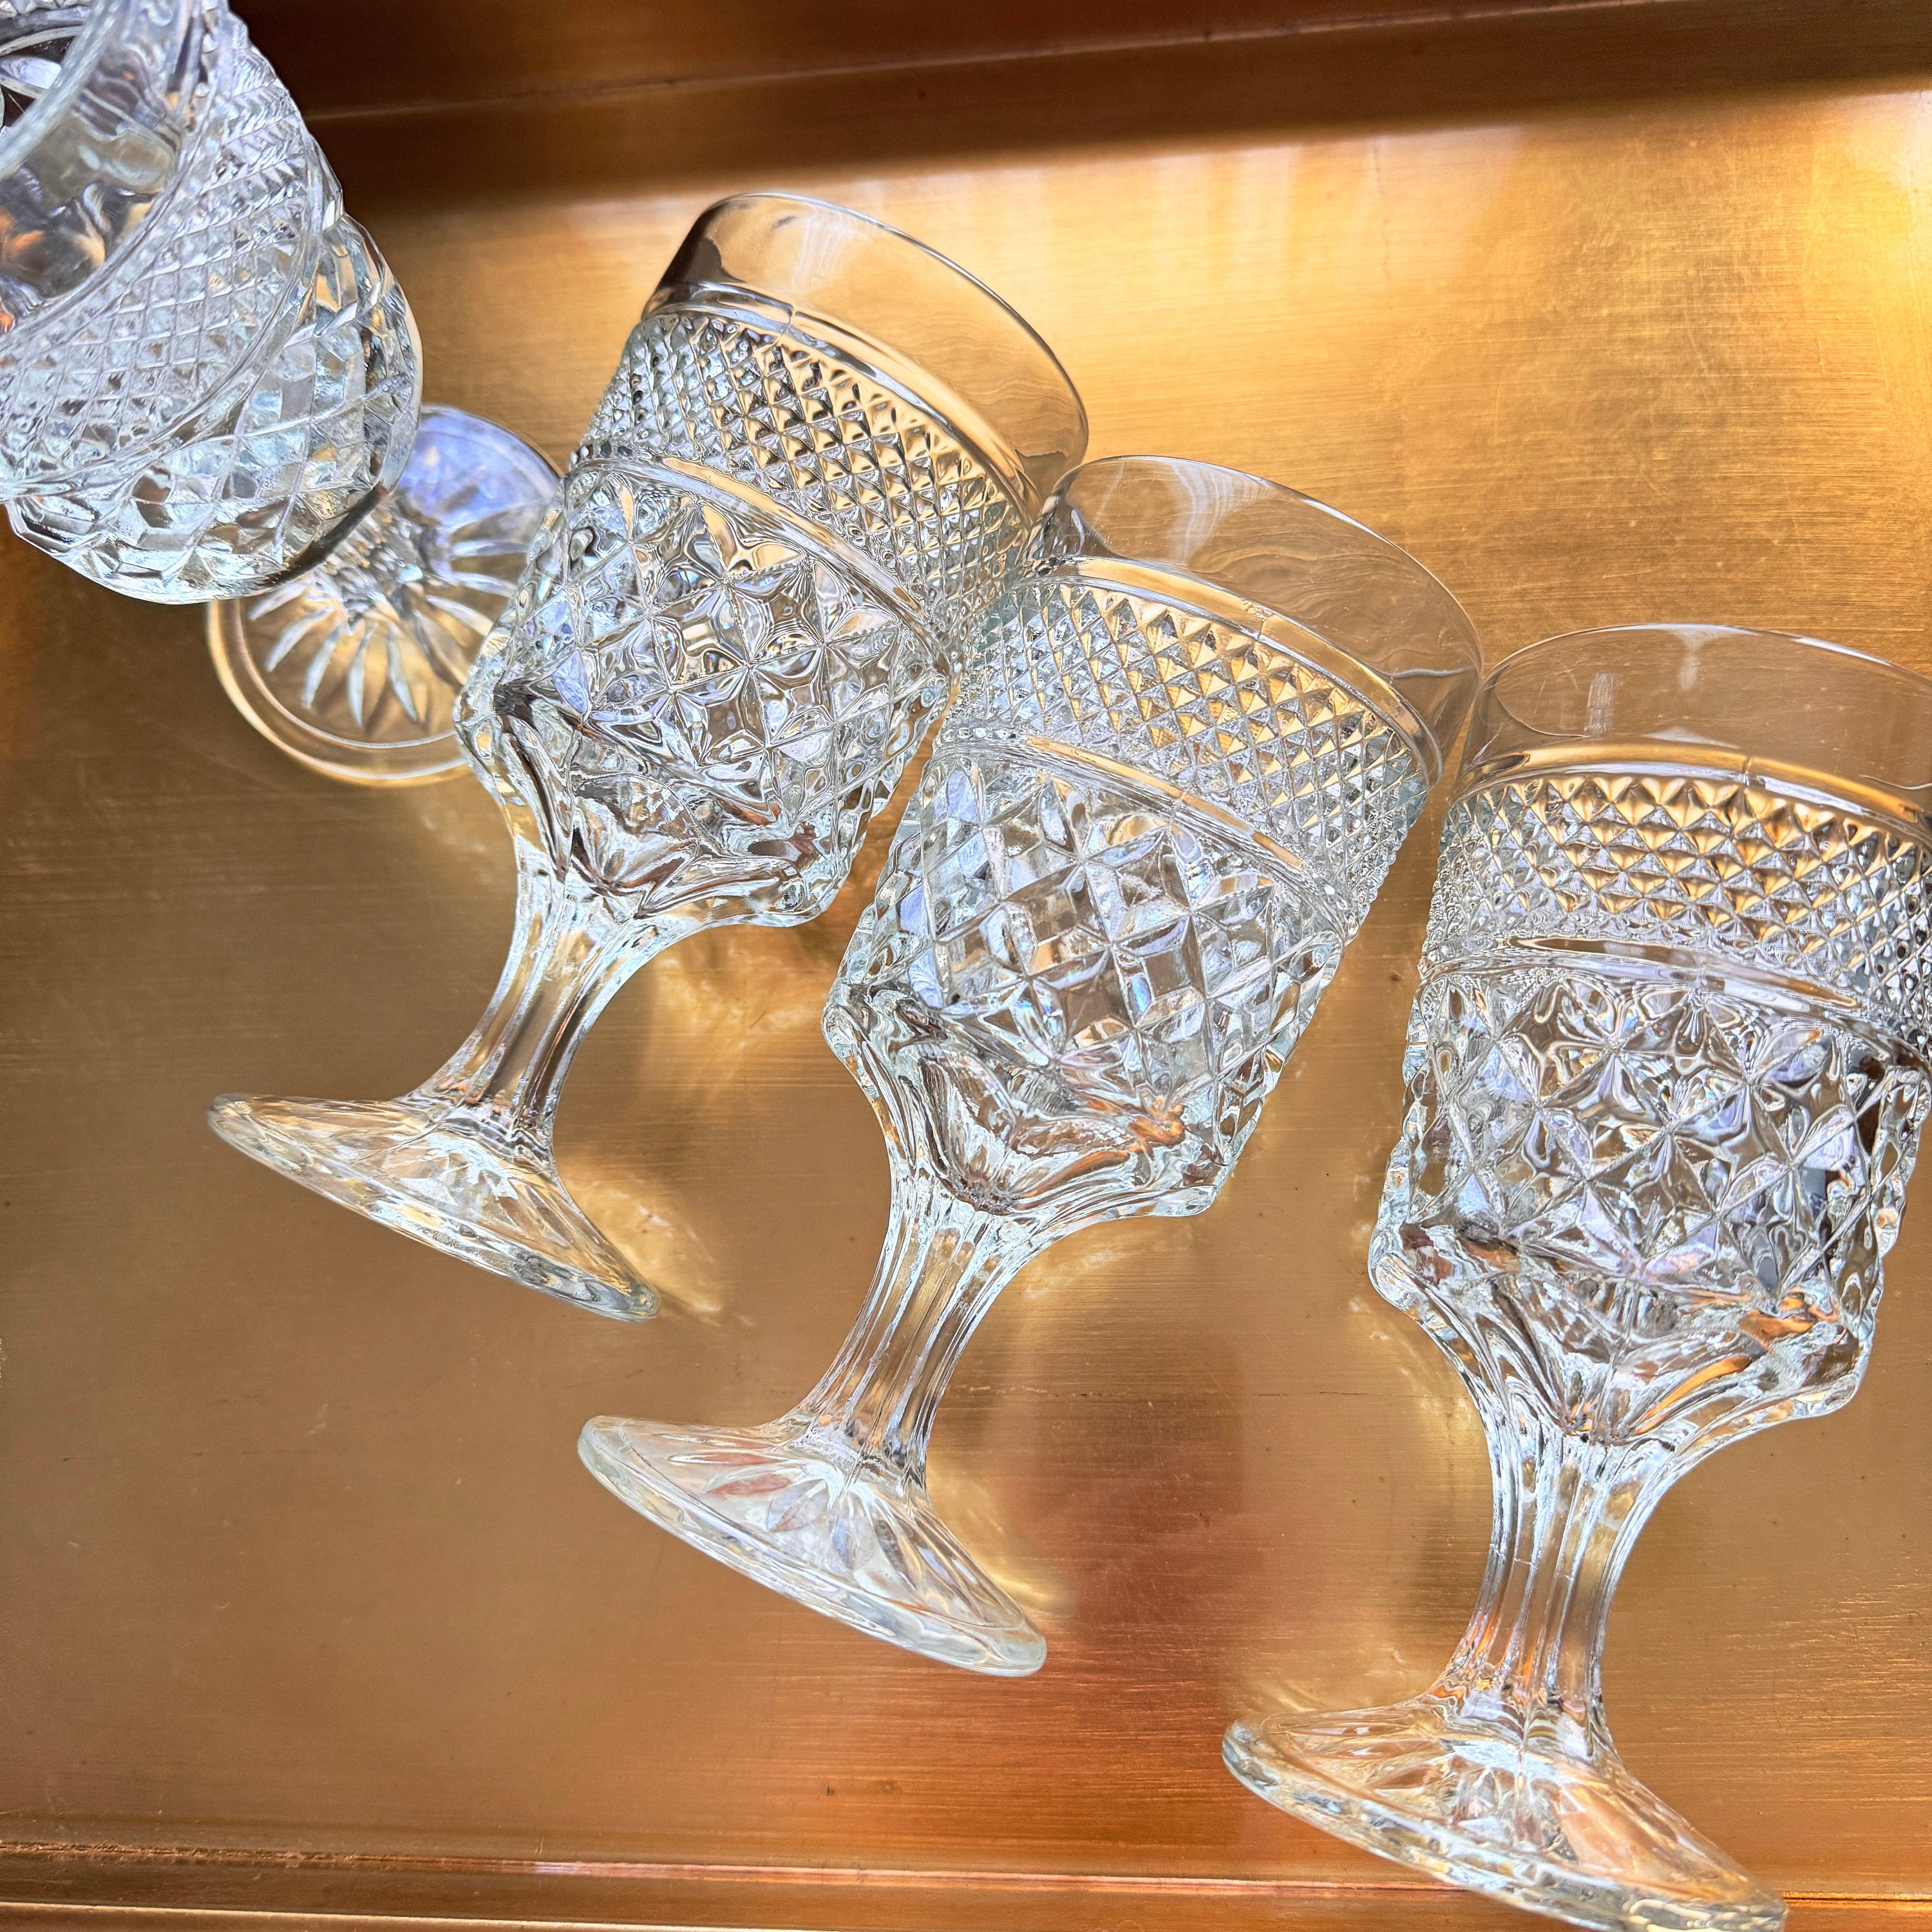 Diamond Design Pretty Wine Glasses - 6 1/4 tall